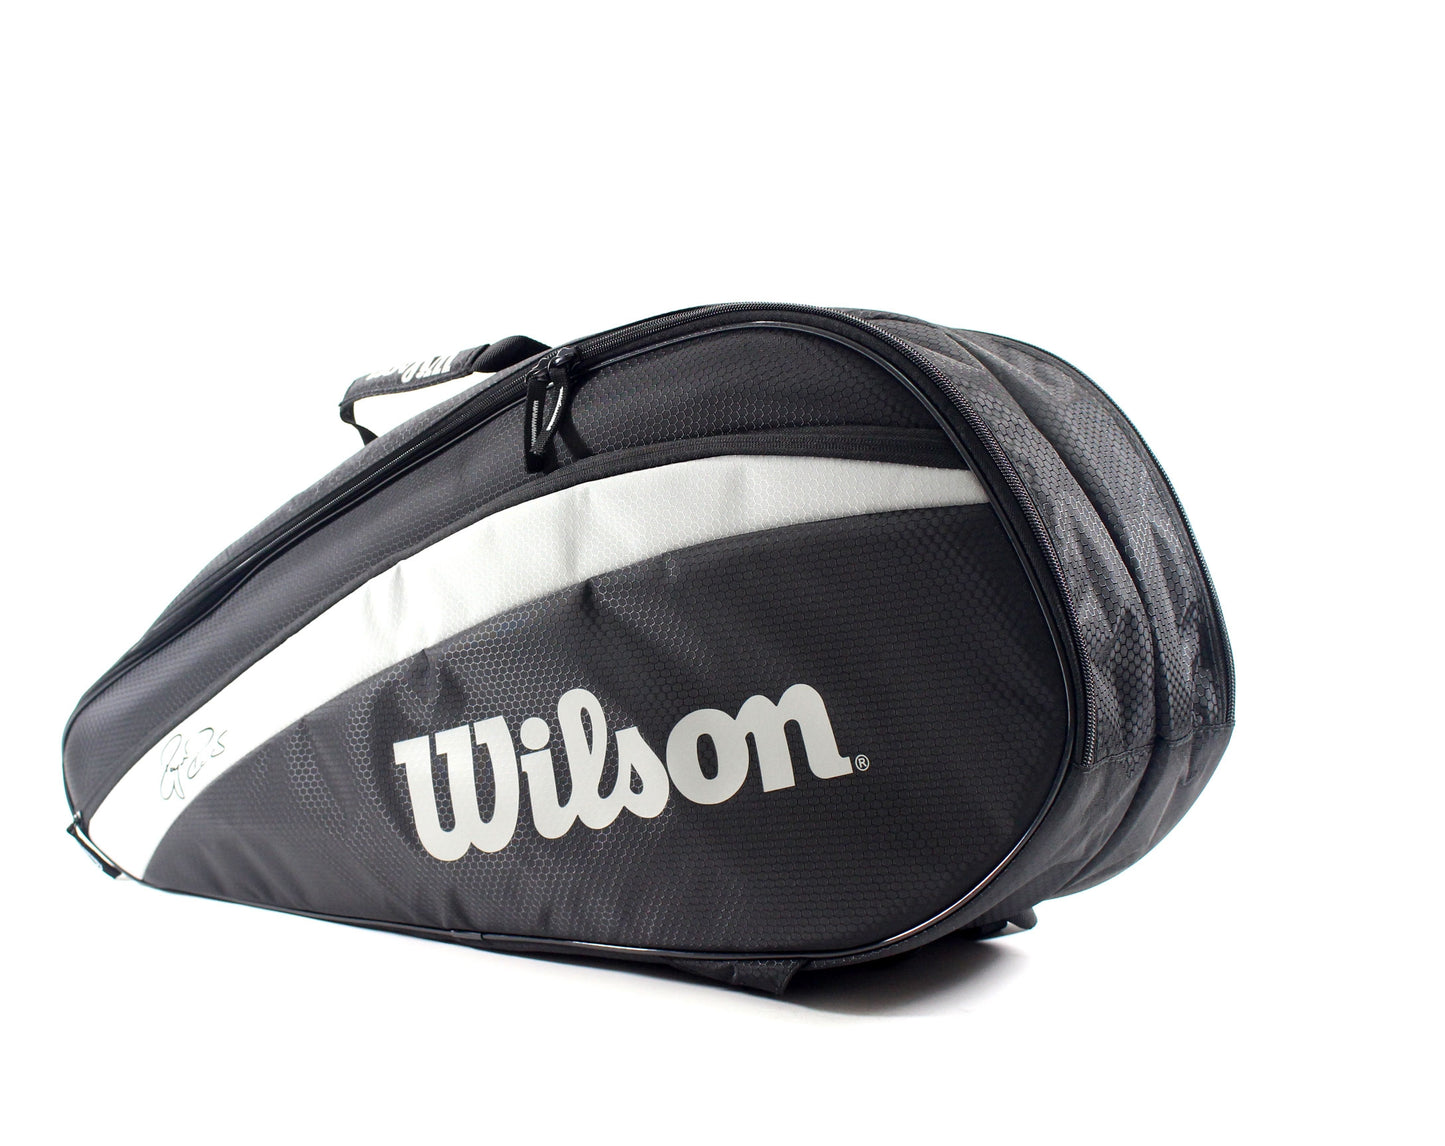 Wilson Federer Team 6 Pack Tennis Bag - Black